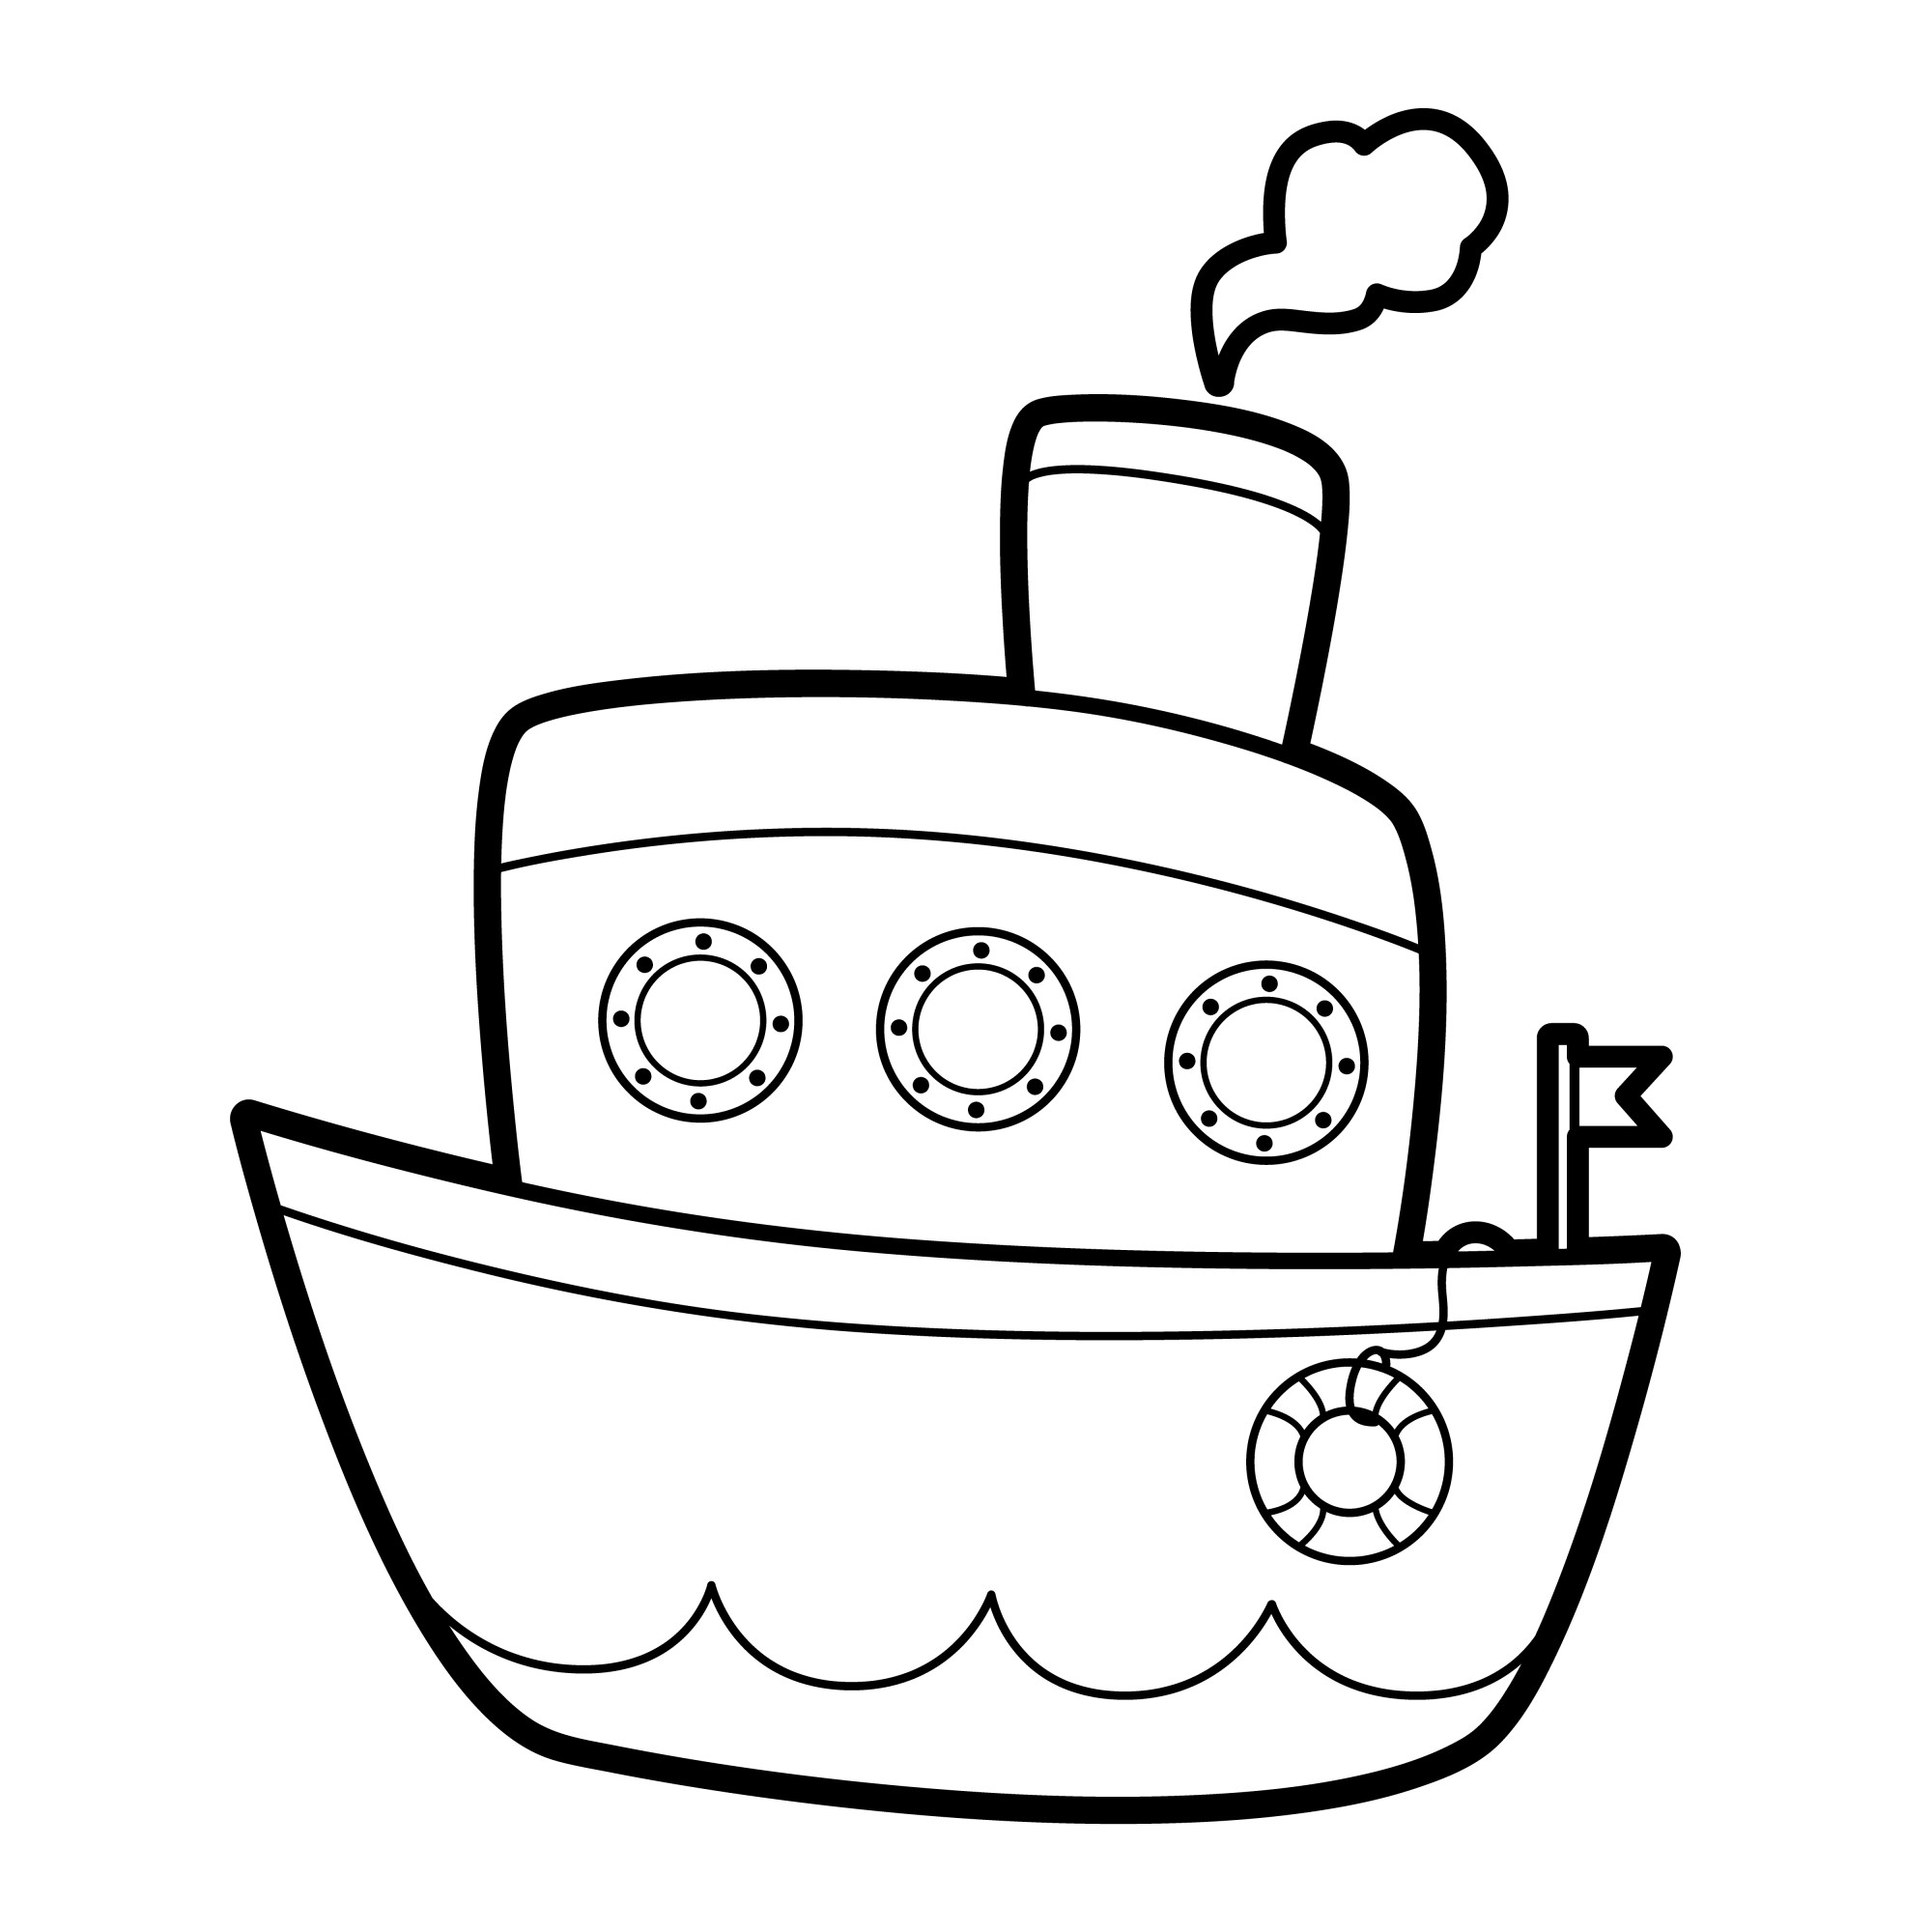 Раскраска для детей: миниатюрный детский кораблик